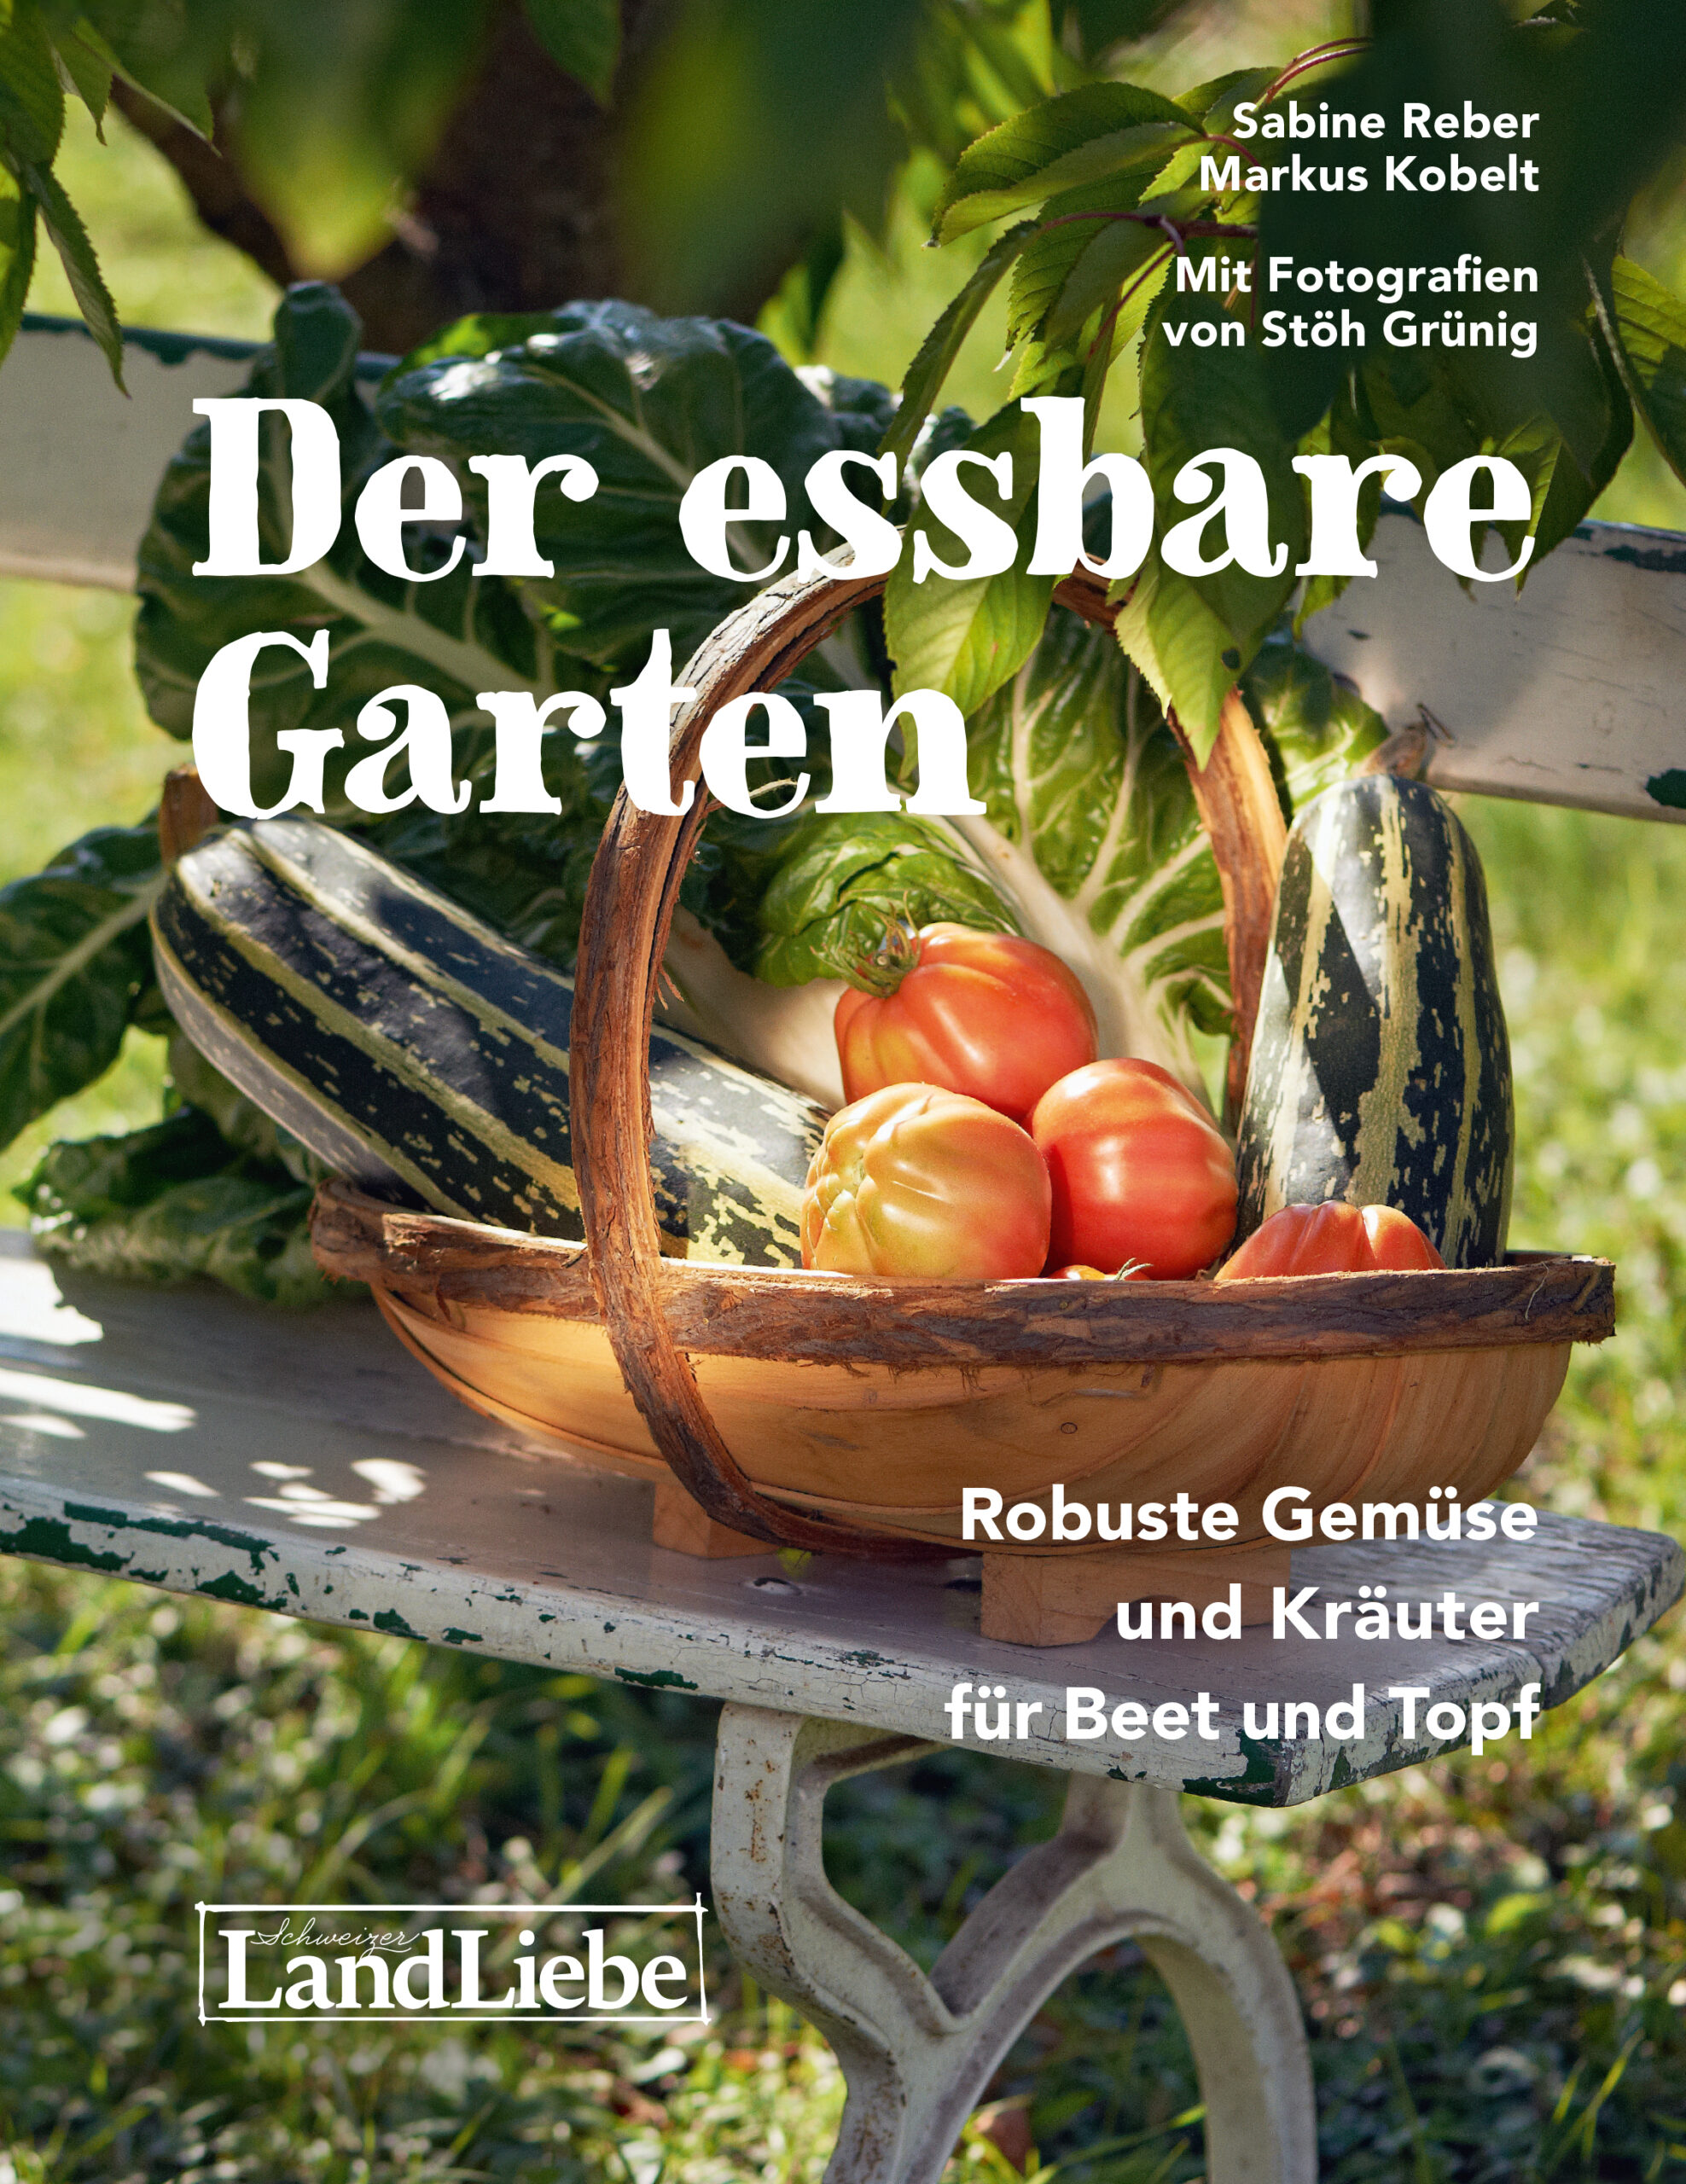 You are currently viewing Gartentalk von Sabine und Markus bei Lubera